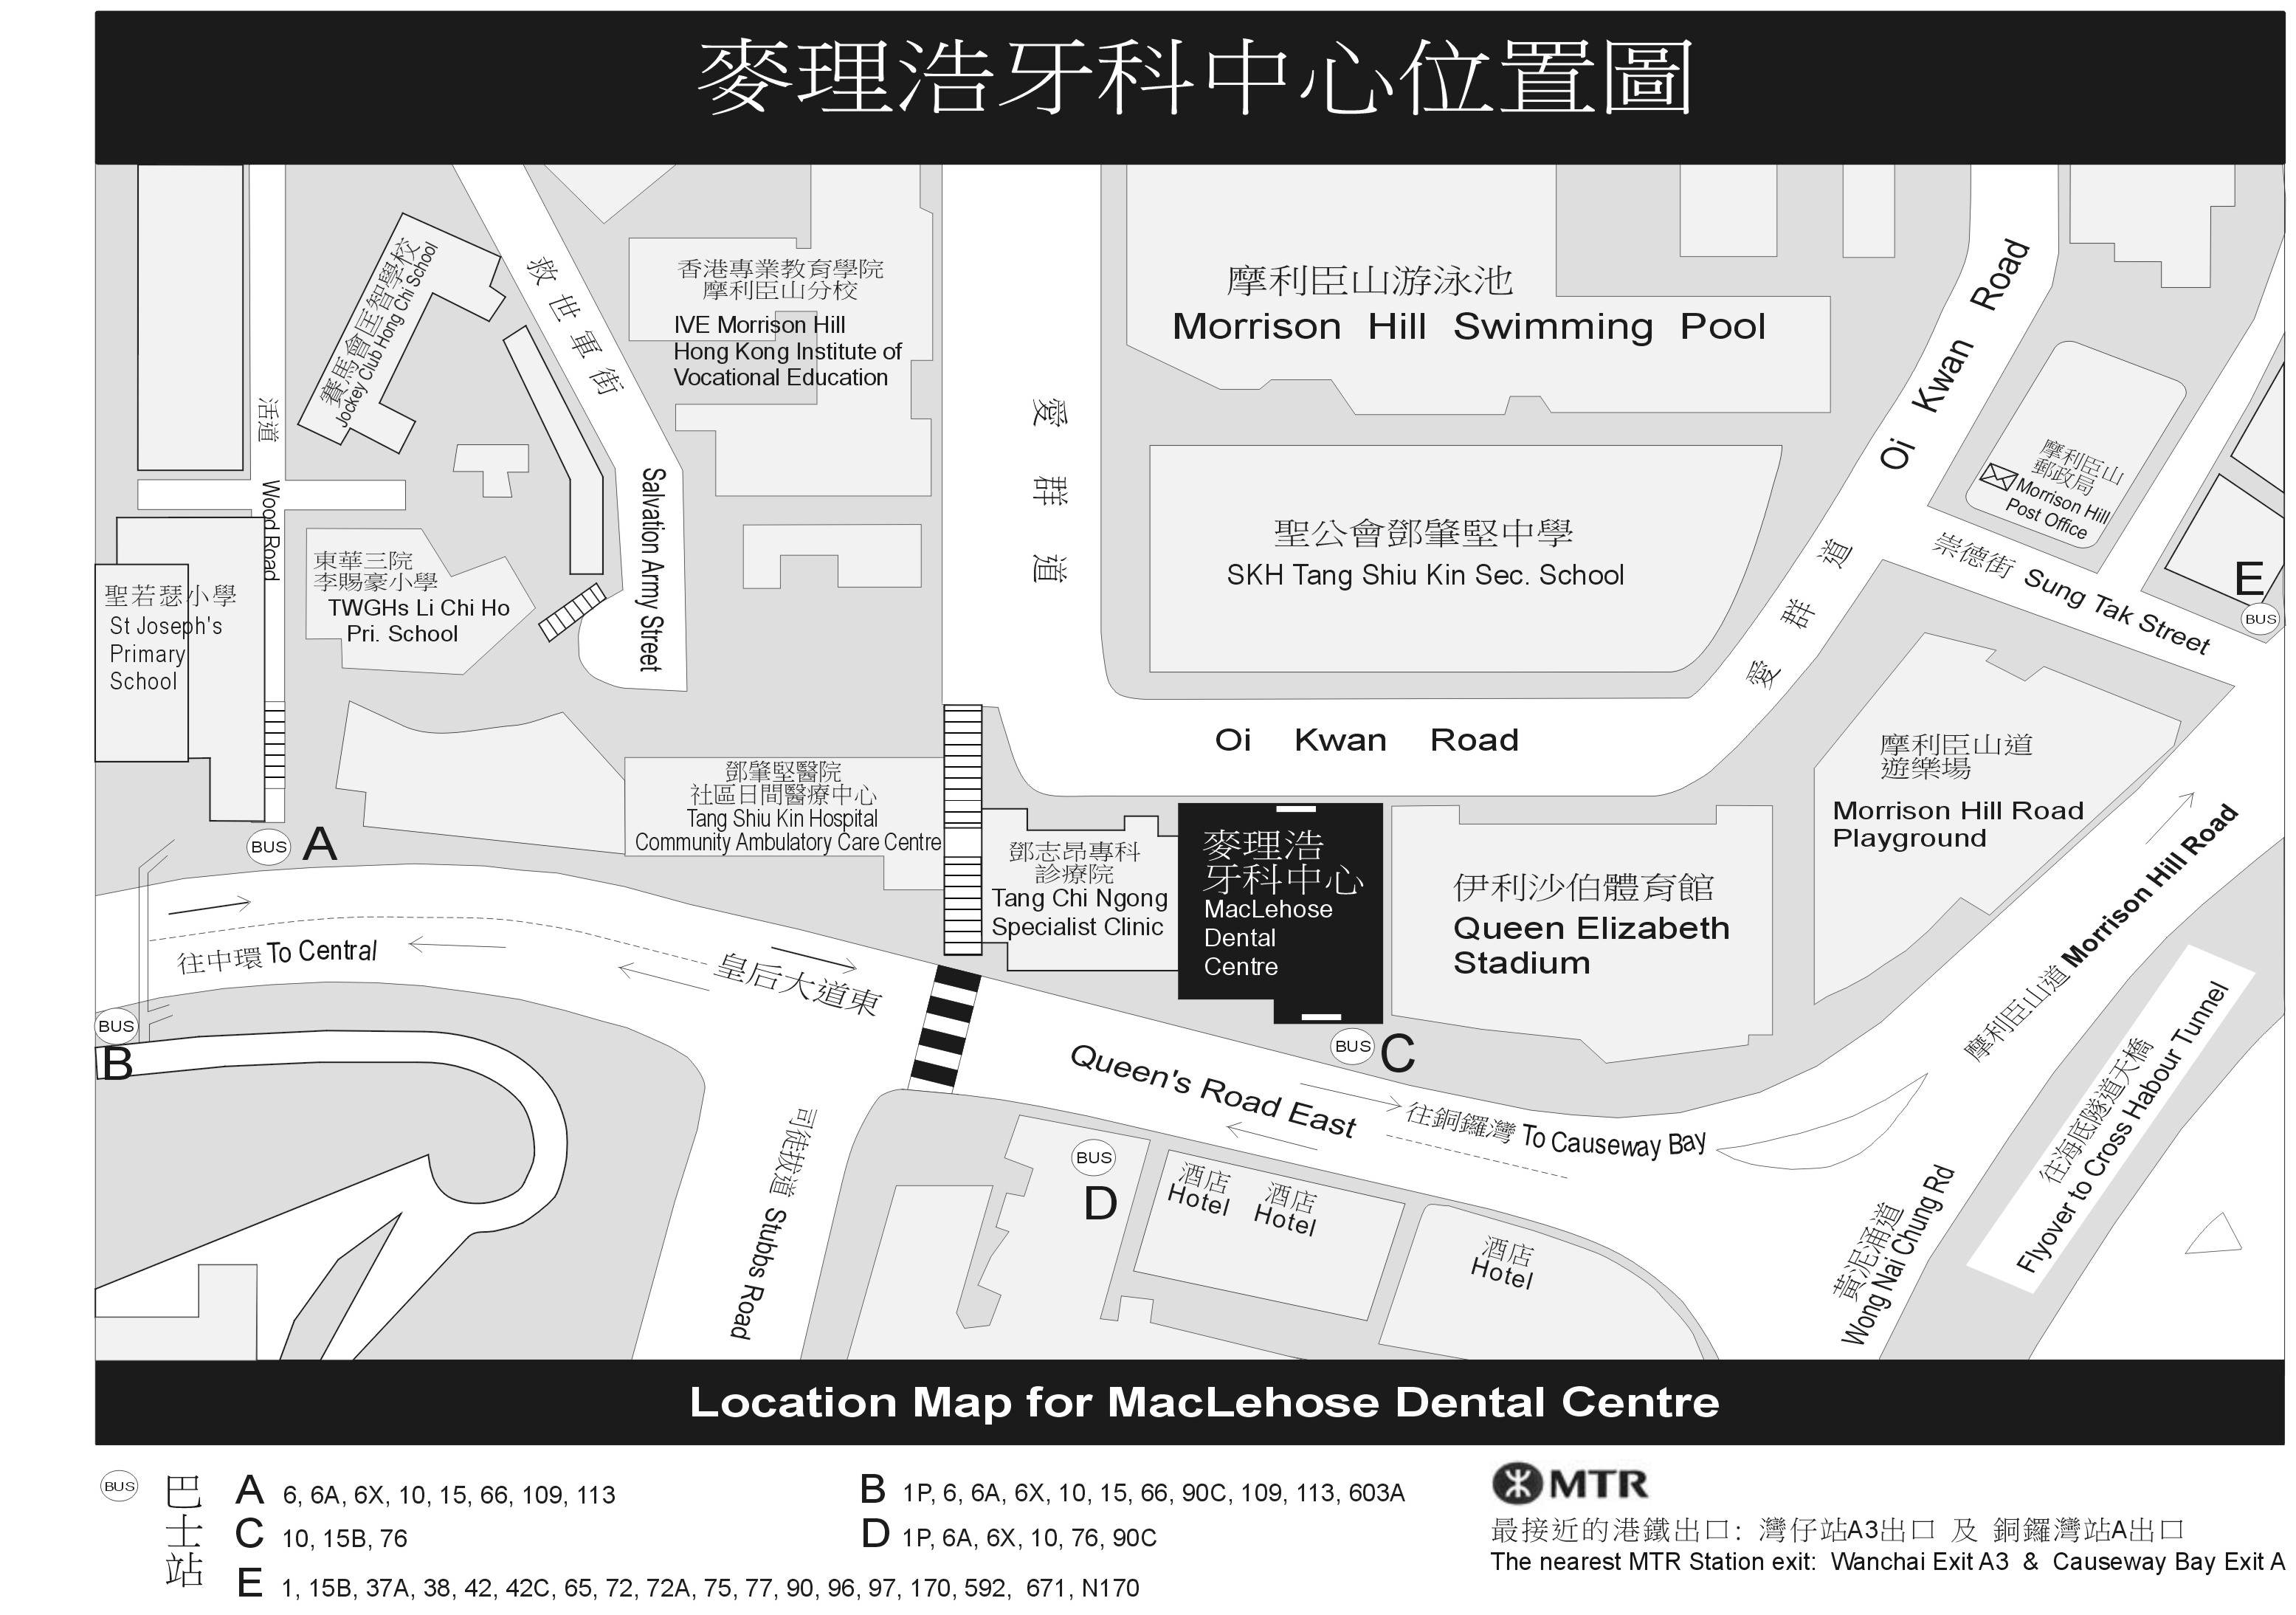 麥理浩牙科中心位置圖相片。鄧肇堅學童牙科診所一字樓位於香港灣仔皇后大道東286號麥理浩牙科中心一樓，附近有伊利沙伯體育館和鄧志昂專科診所。